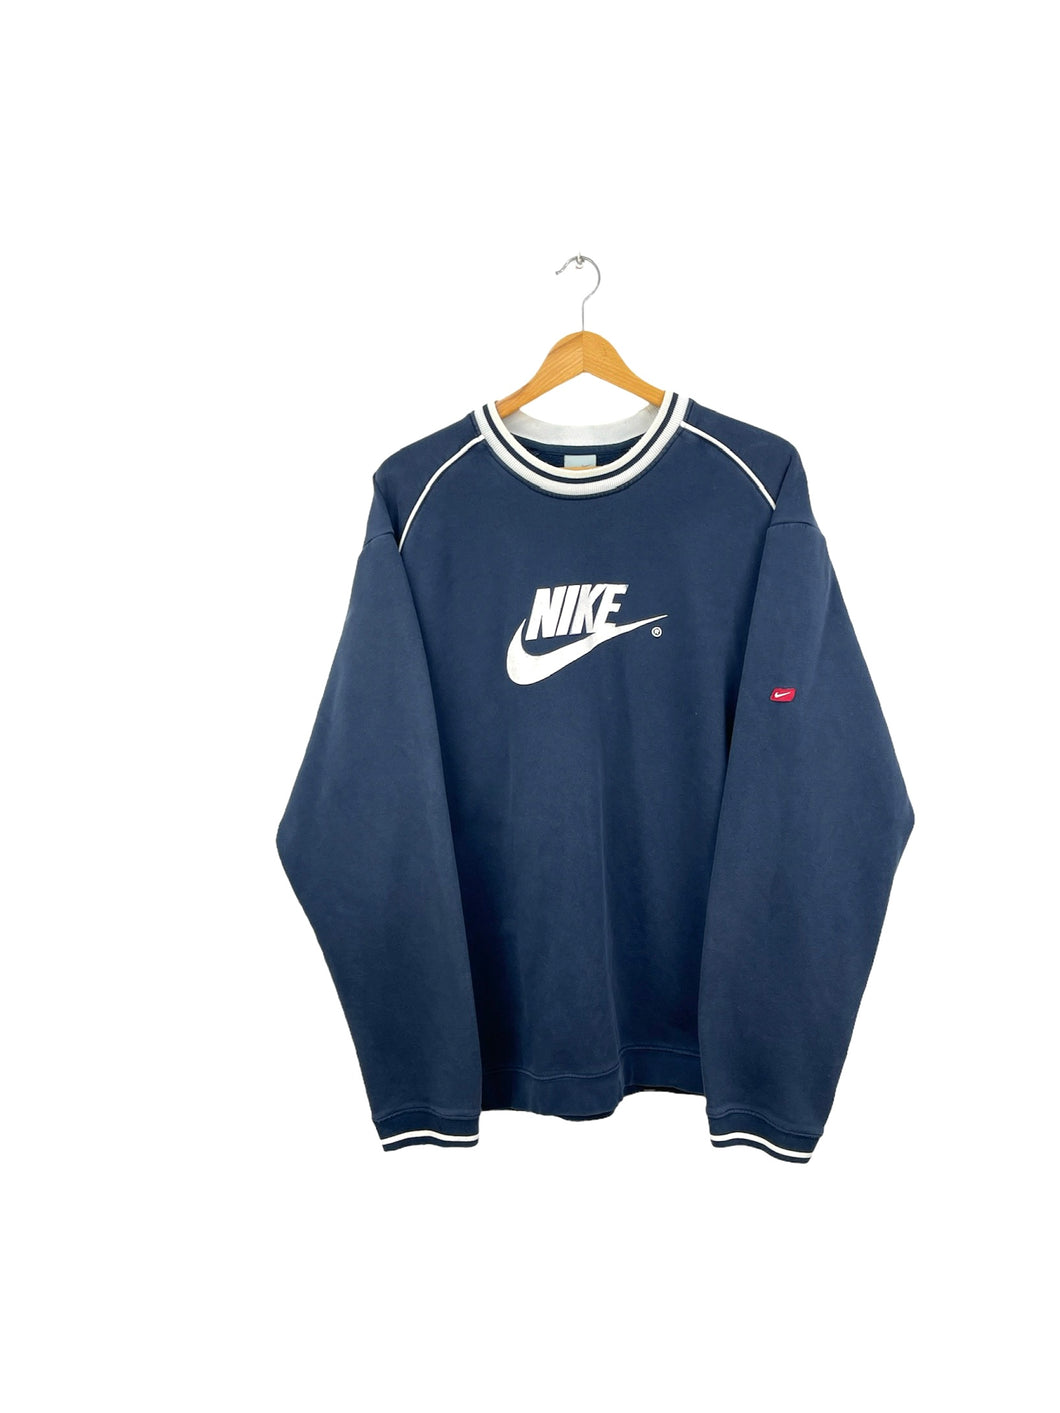 Nike Sweatshirt - XLarge